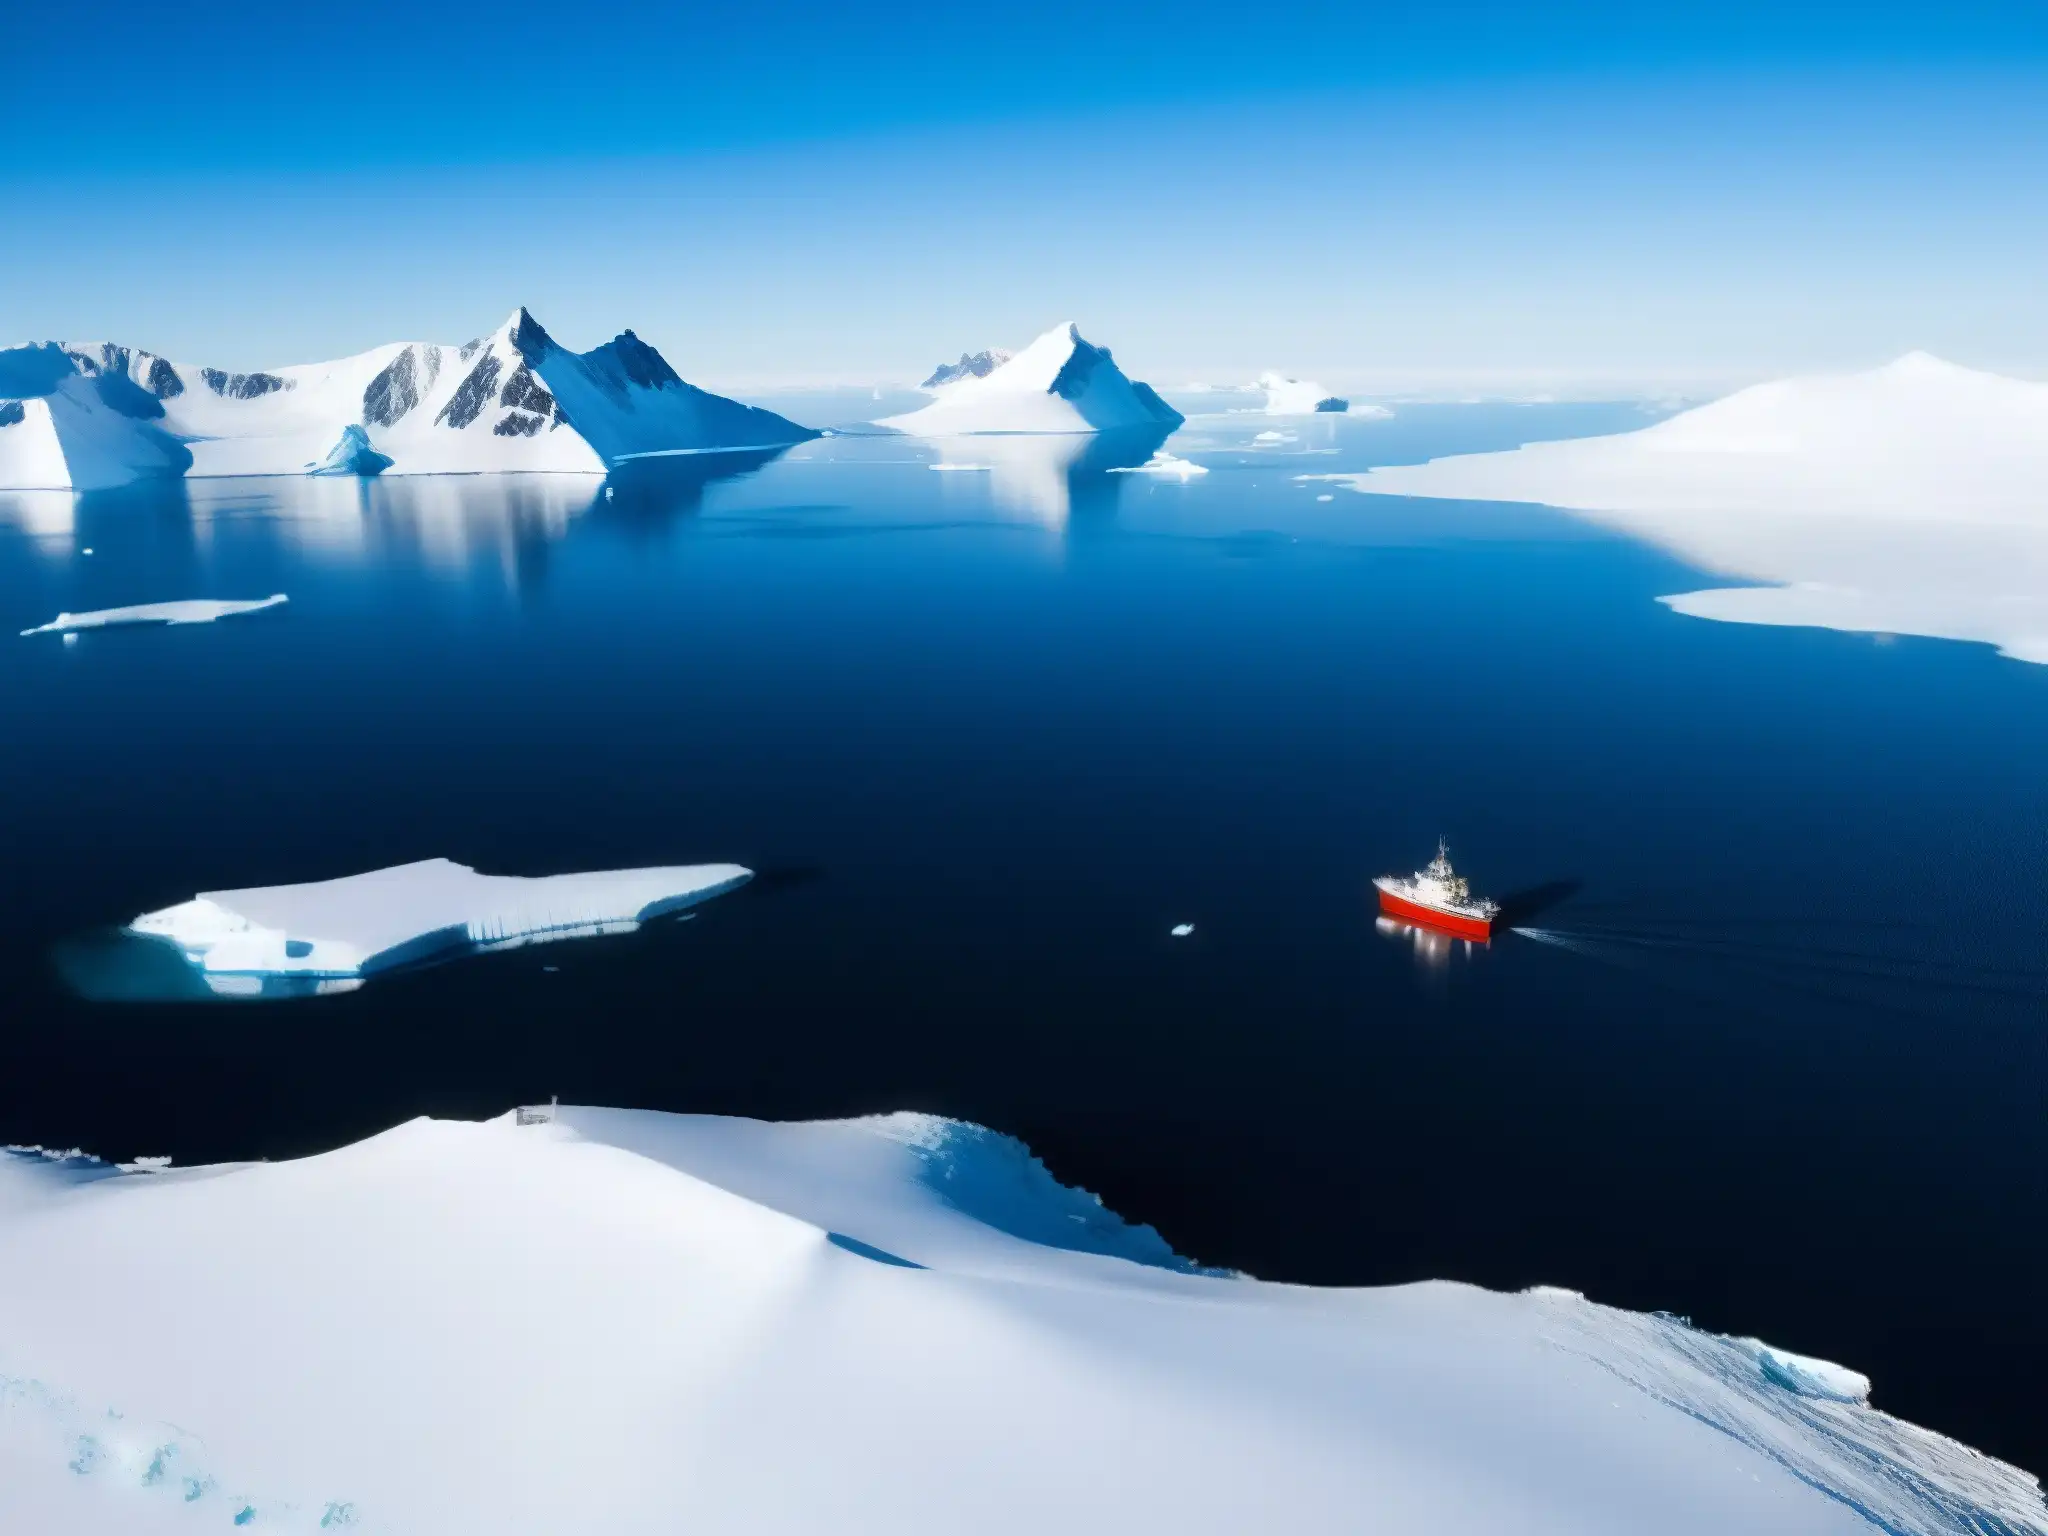 Una base de investigación remota en la desolada belleza de la Antártida, con montañas nevadas y el océano azul